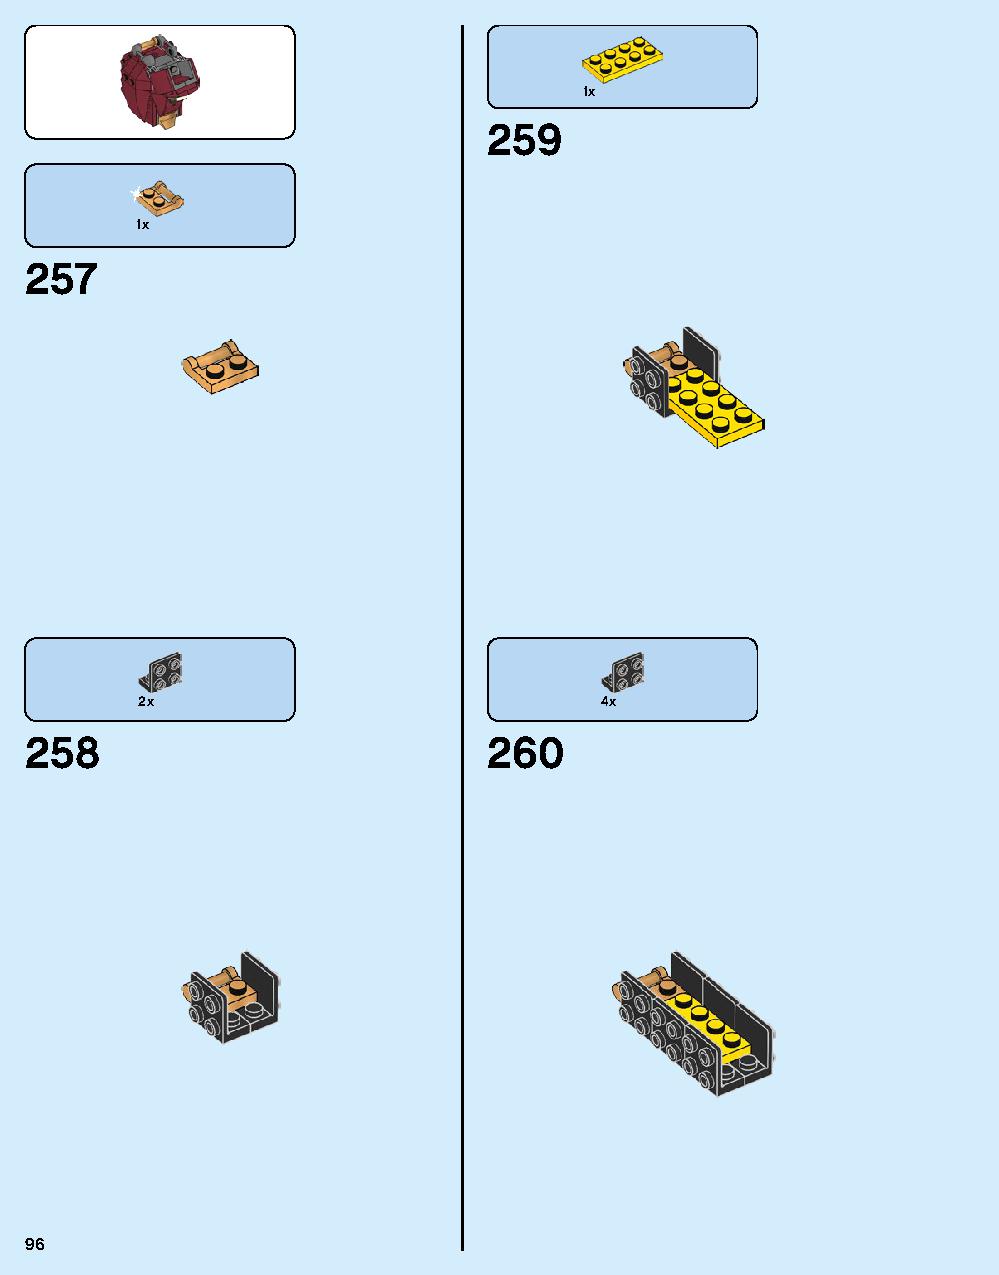 ハルクバスター：ウルトロン・エディション 76105 レゴの商品情報 レゴの説明書・組立方法 96 page